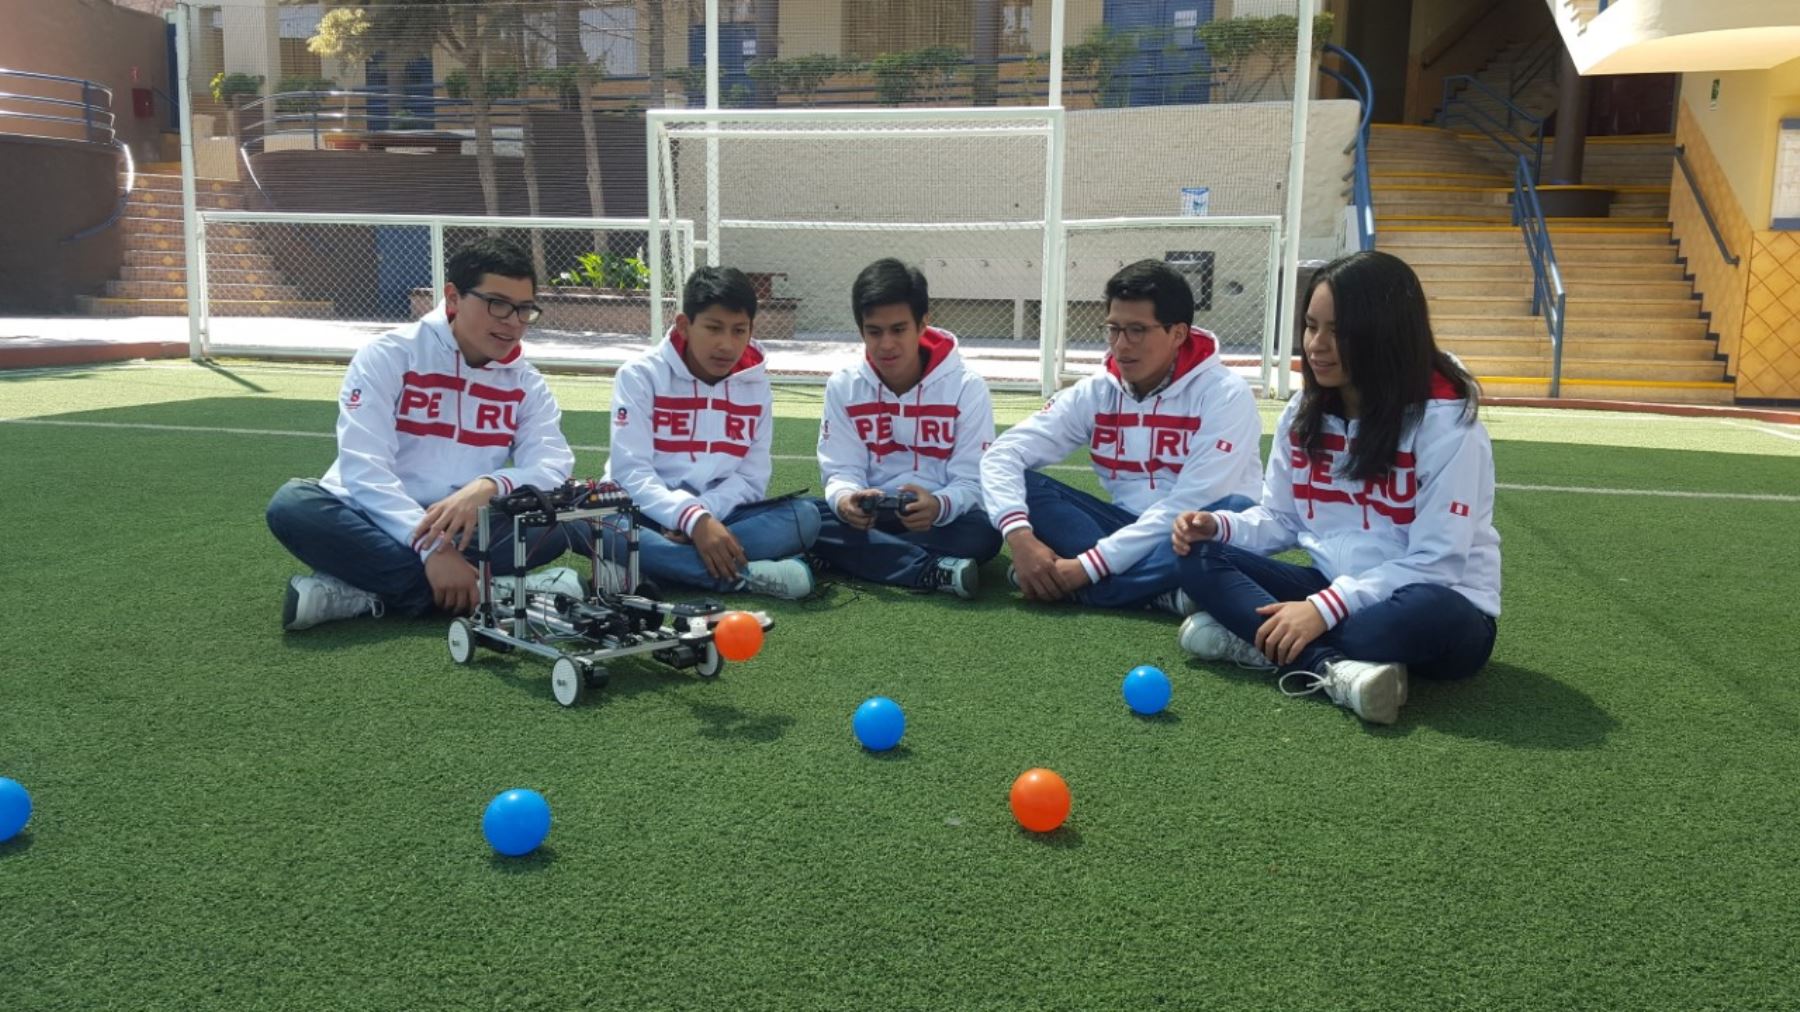 Peruvian participants at Int